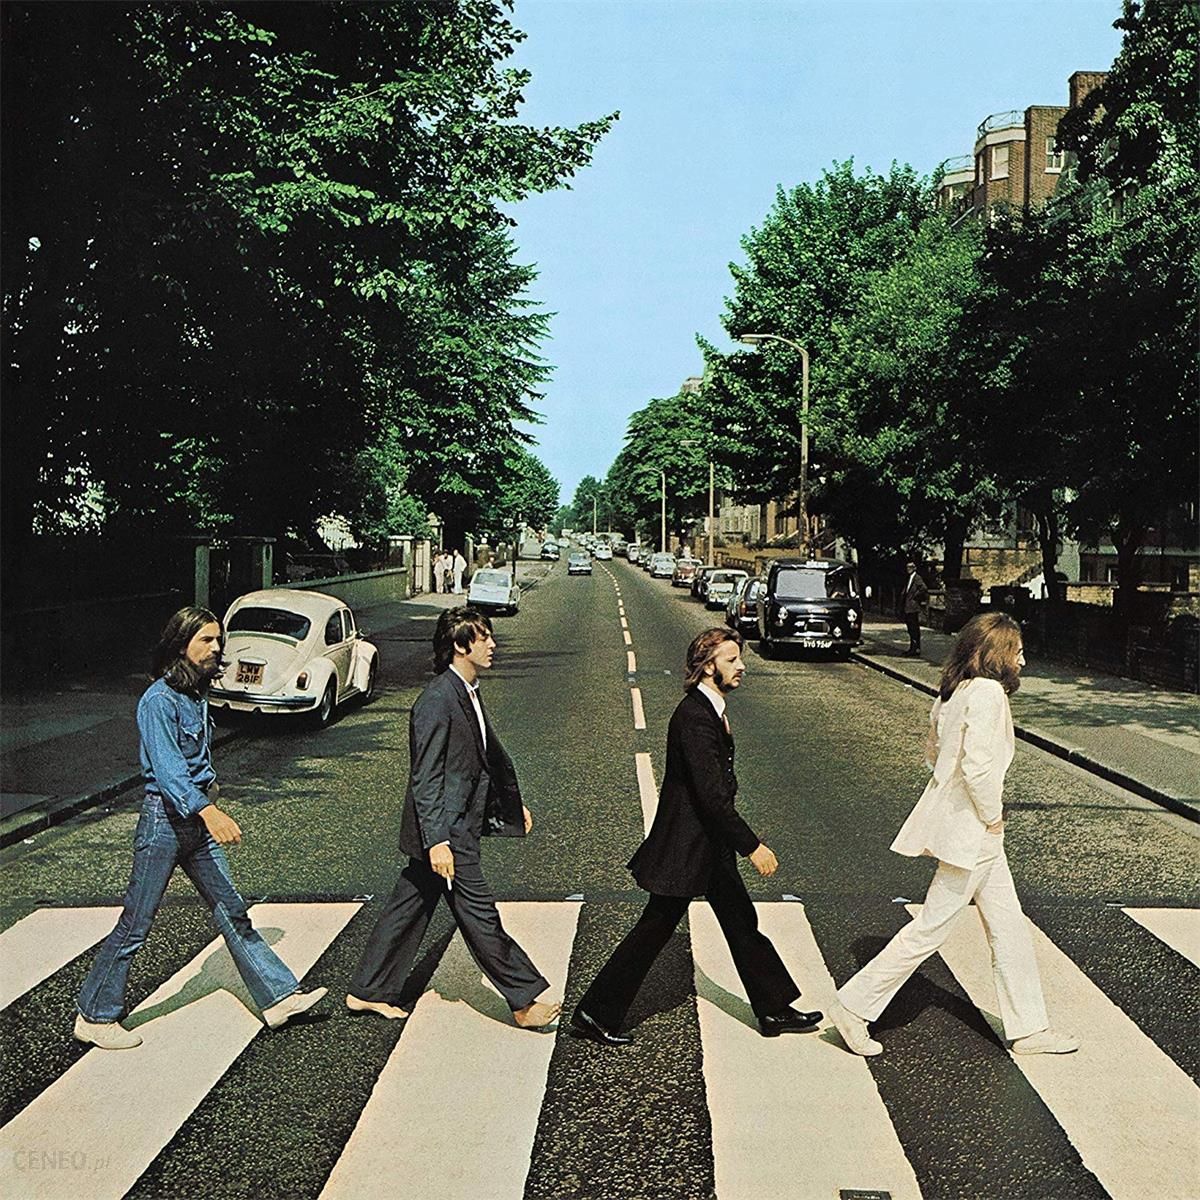 Plyta Winylowa The Beatles Abbey Road 50th Anniversary Edition Winyl Ceny I Opinie Ceneo Pl